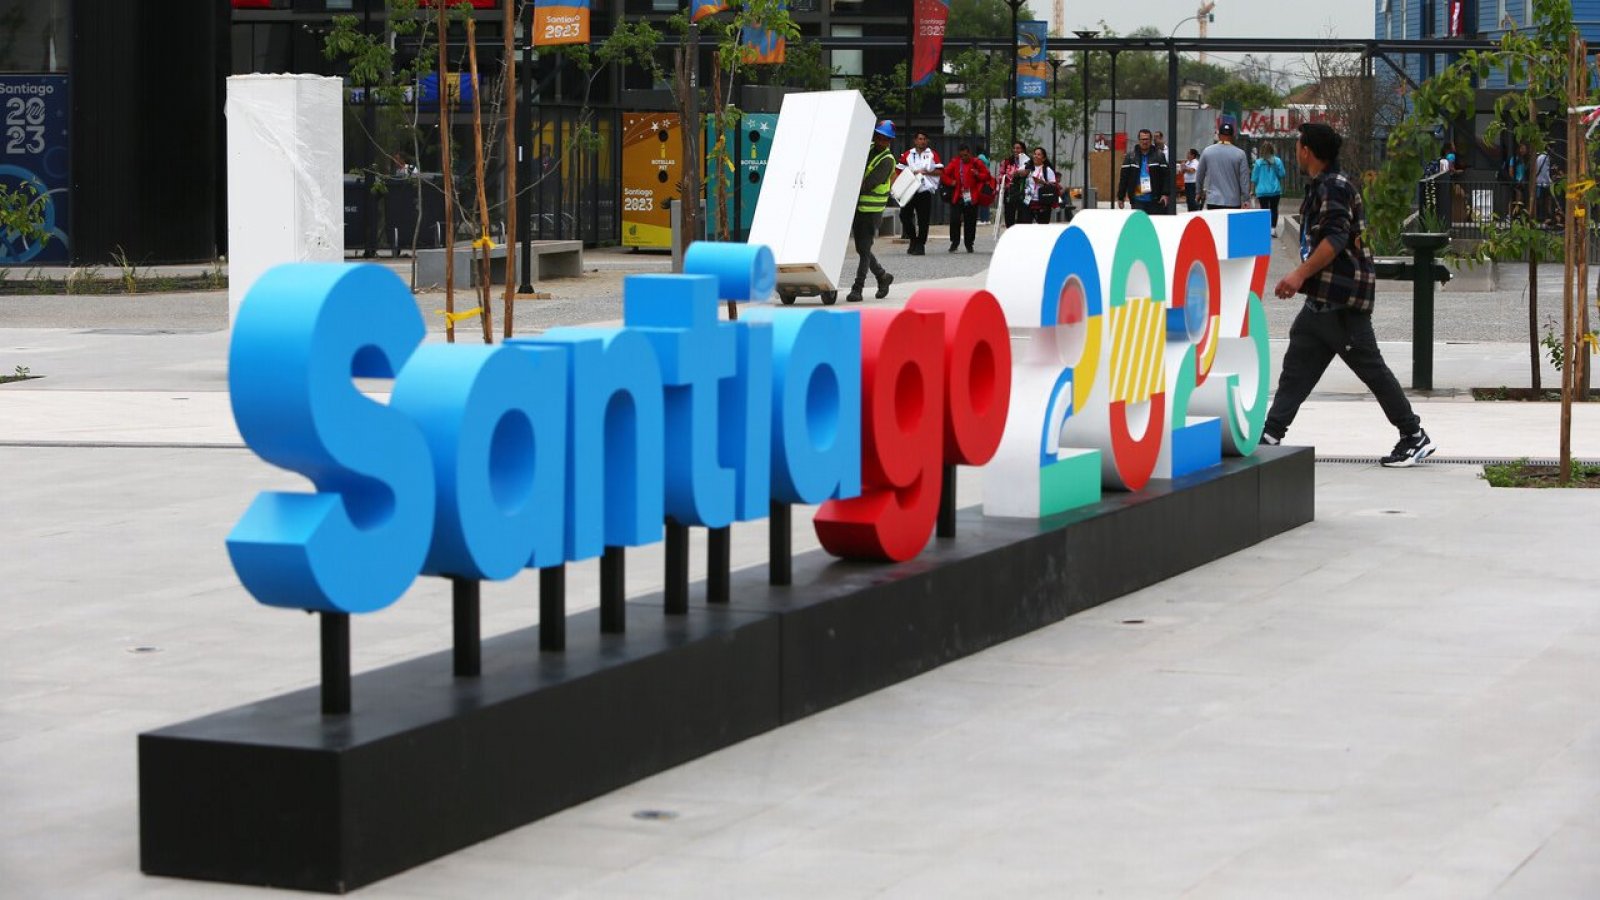 Juegos Panamericanos Santiago 2023